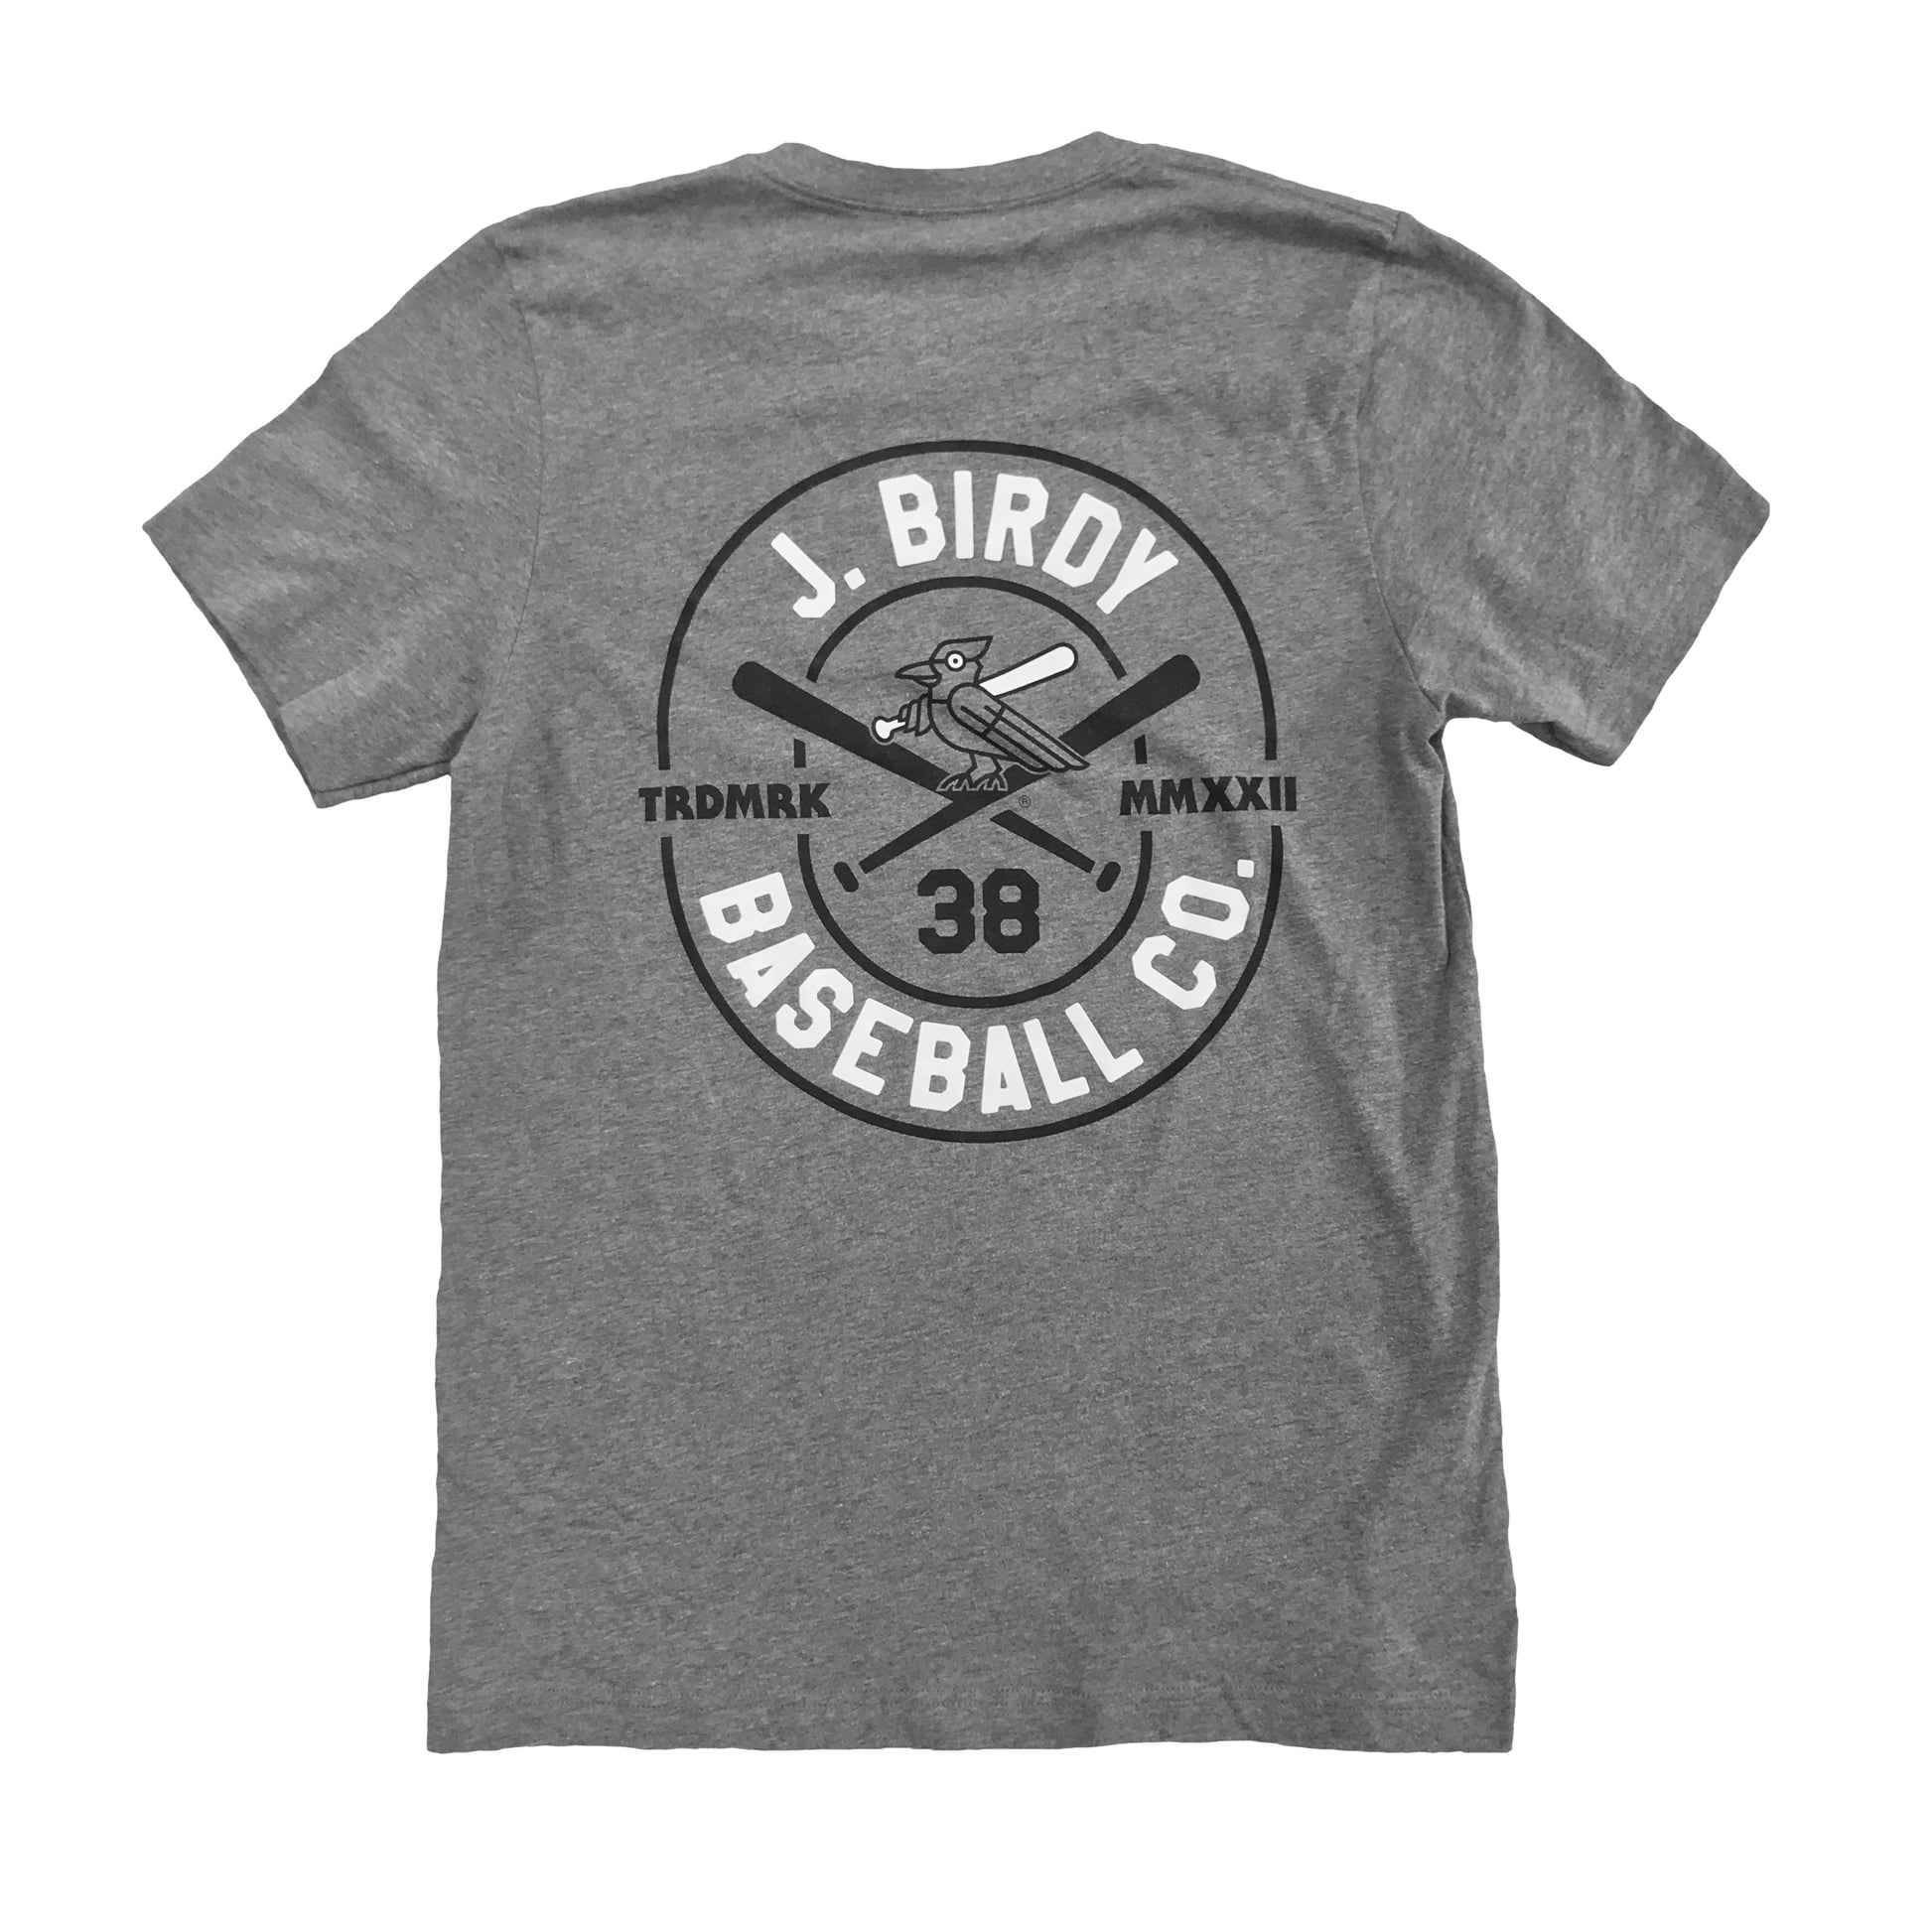 JBIRDY-Canadian-Baseball-Grey-Trademark-Tshirt